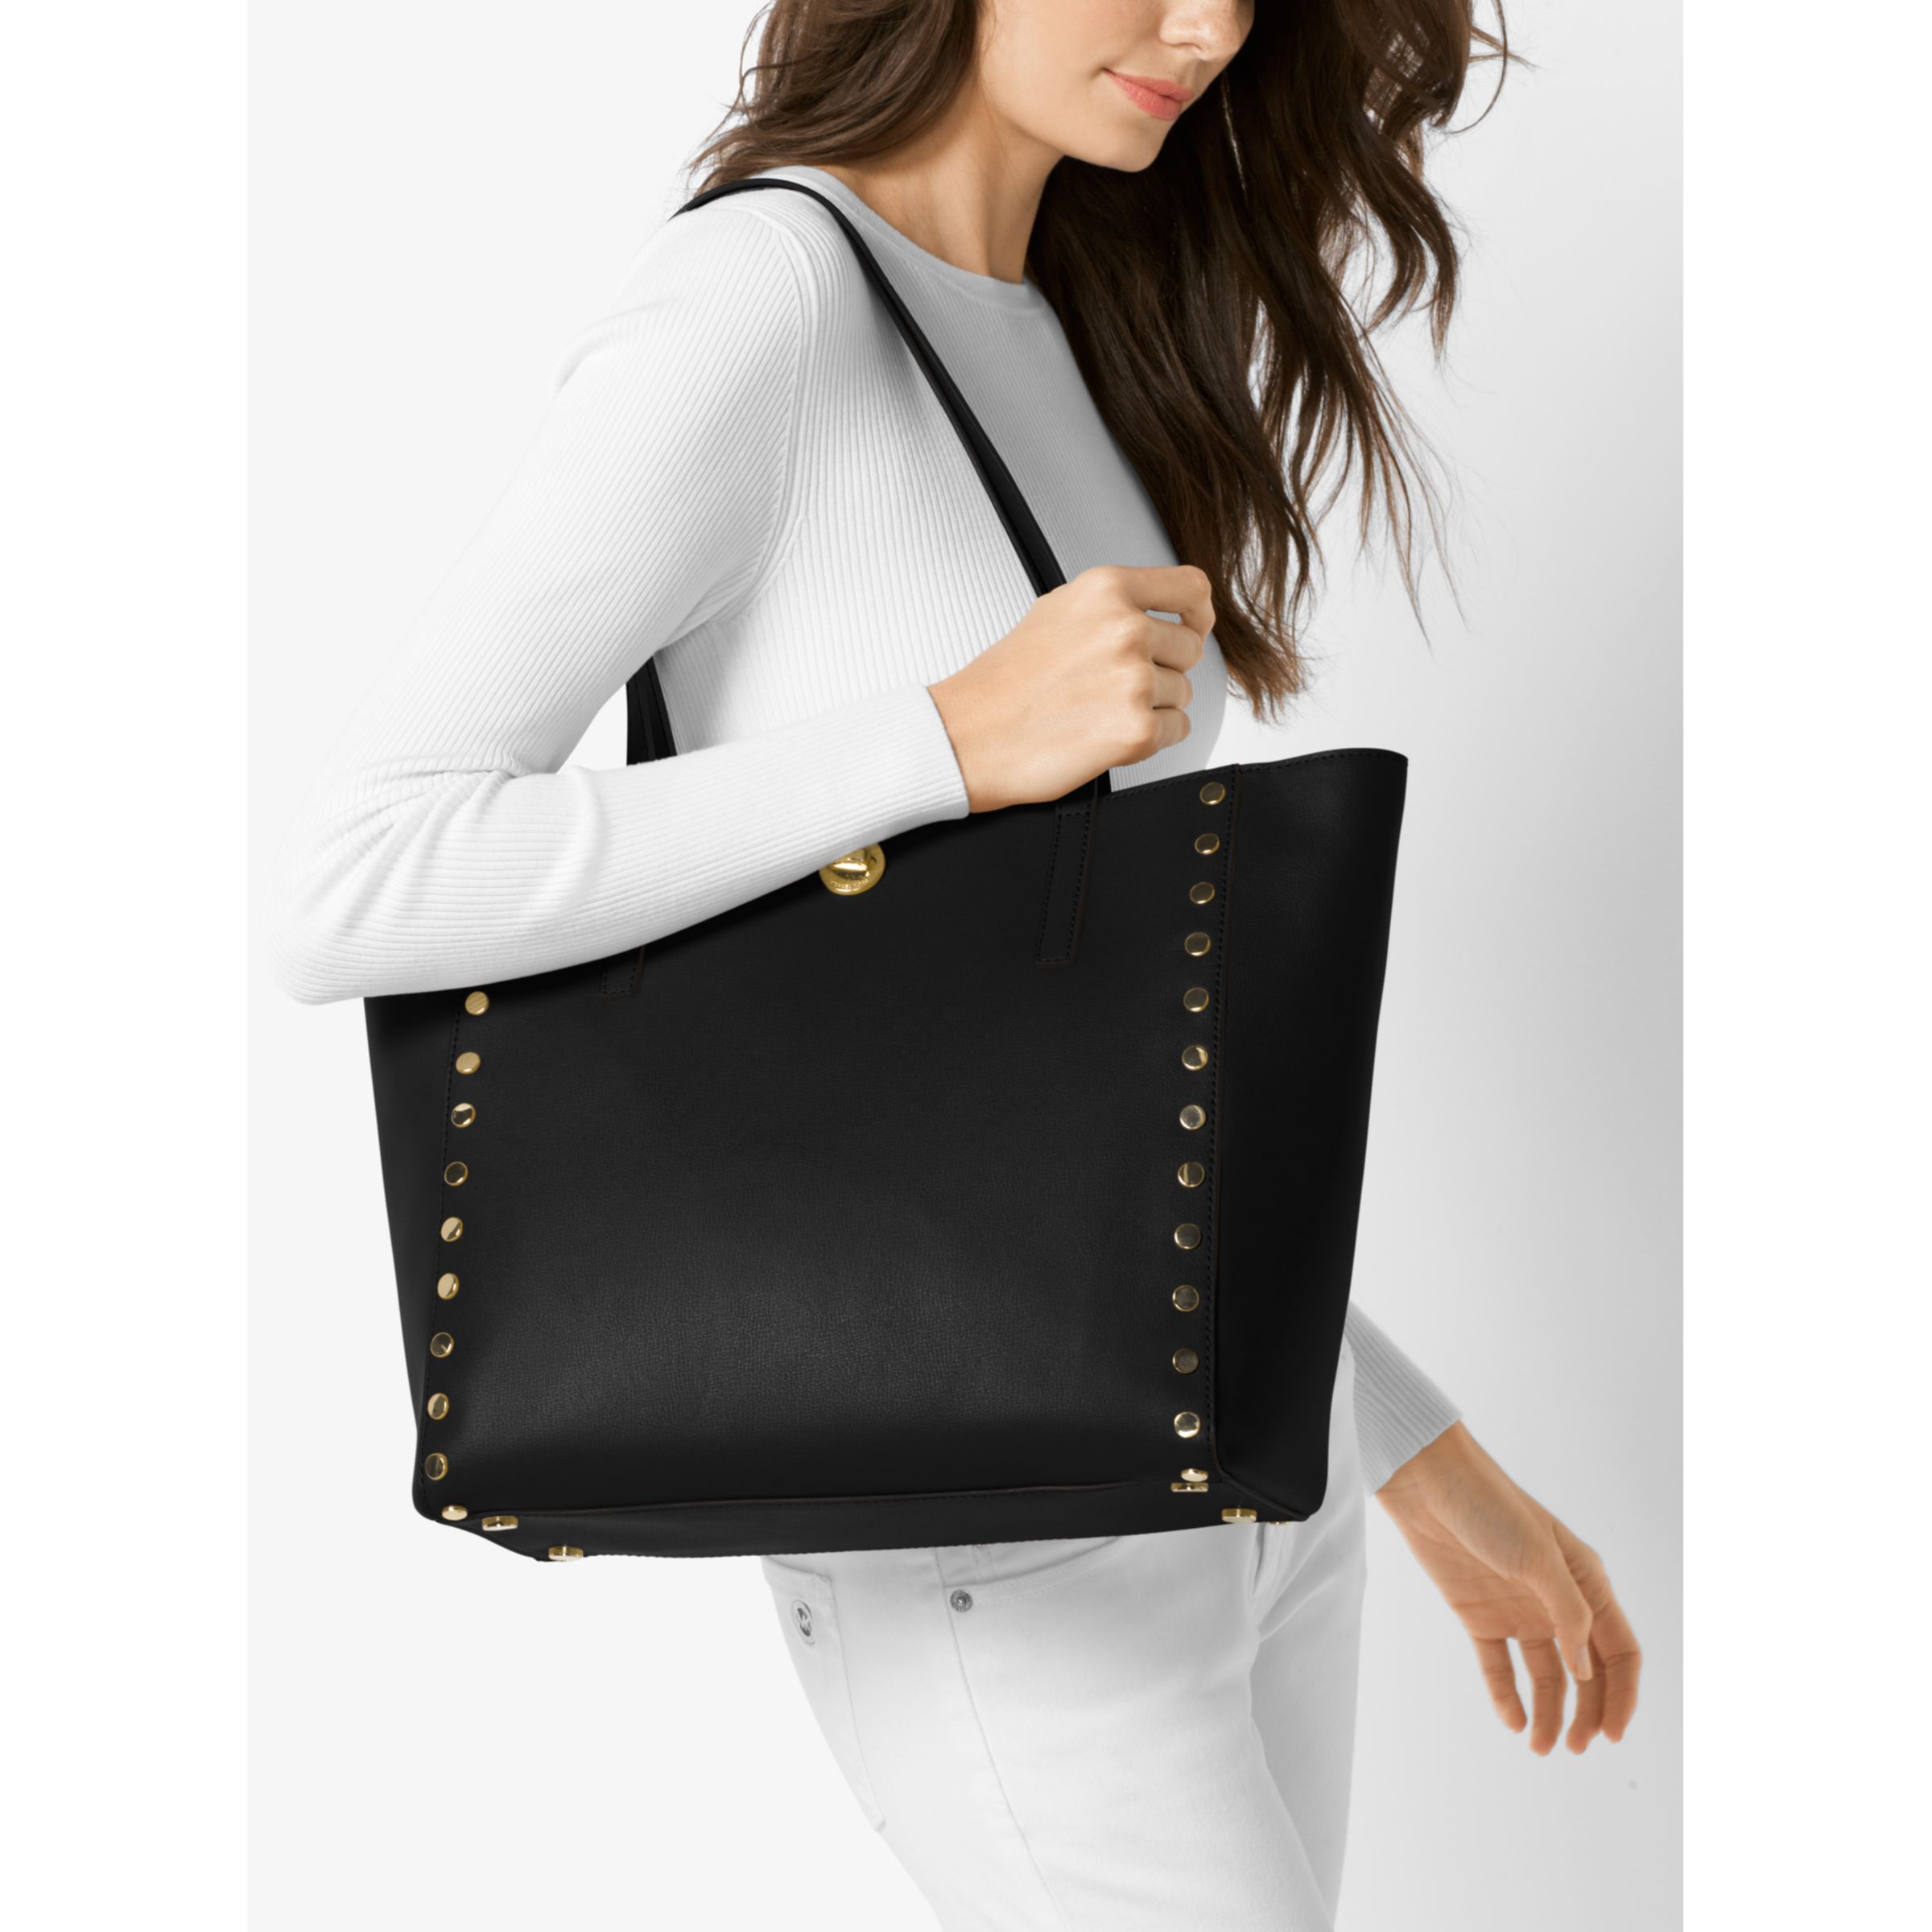 rivington large saffiano leather tote bag